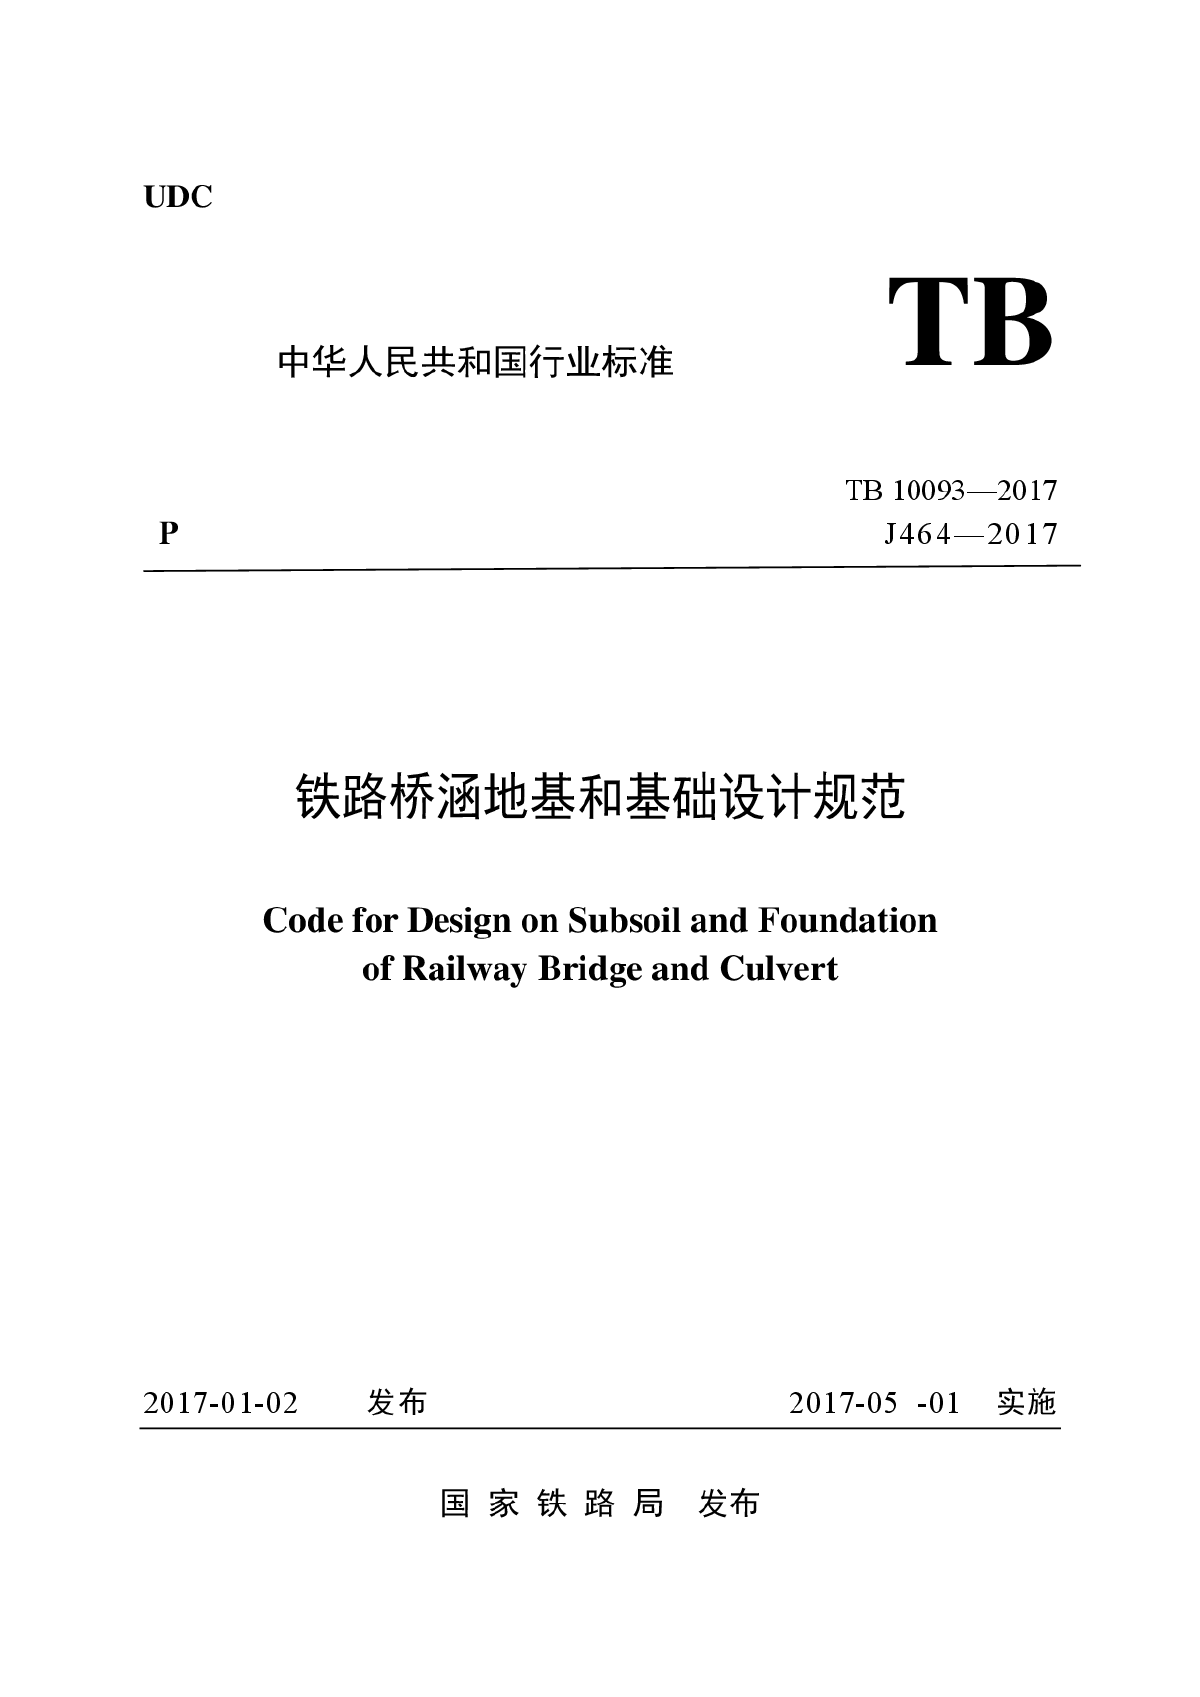 铁路桥涵地基和基础设计规范TB 10093-2017